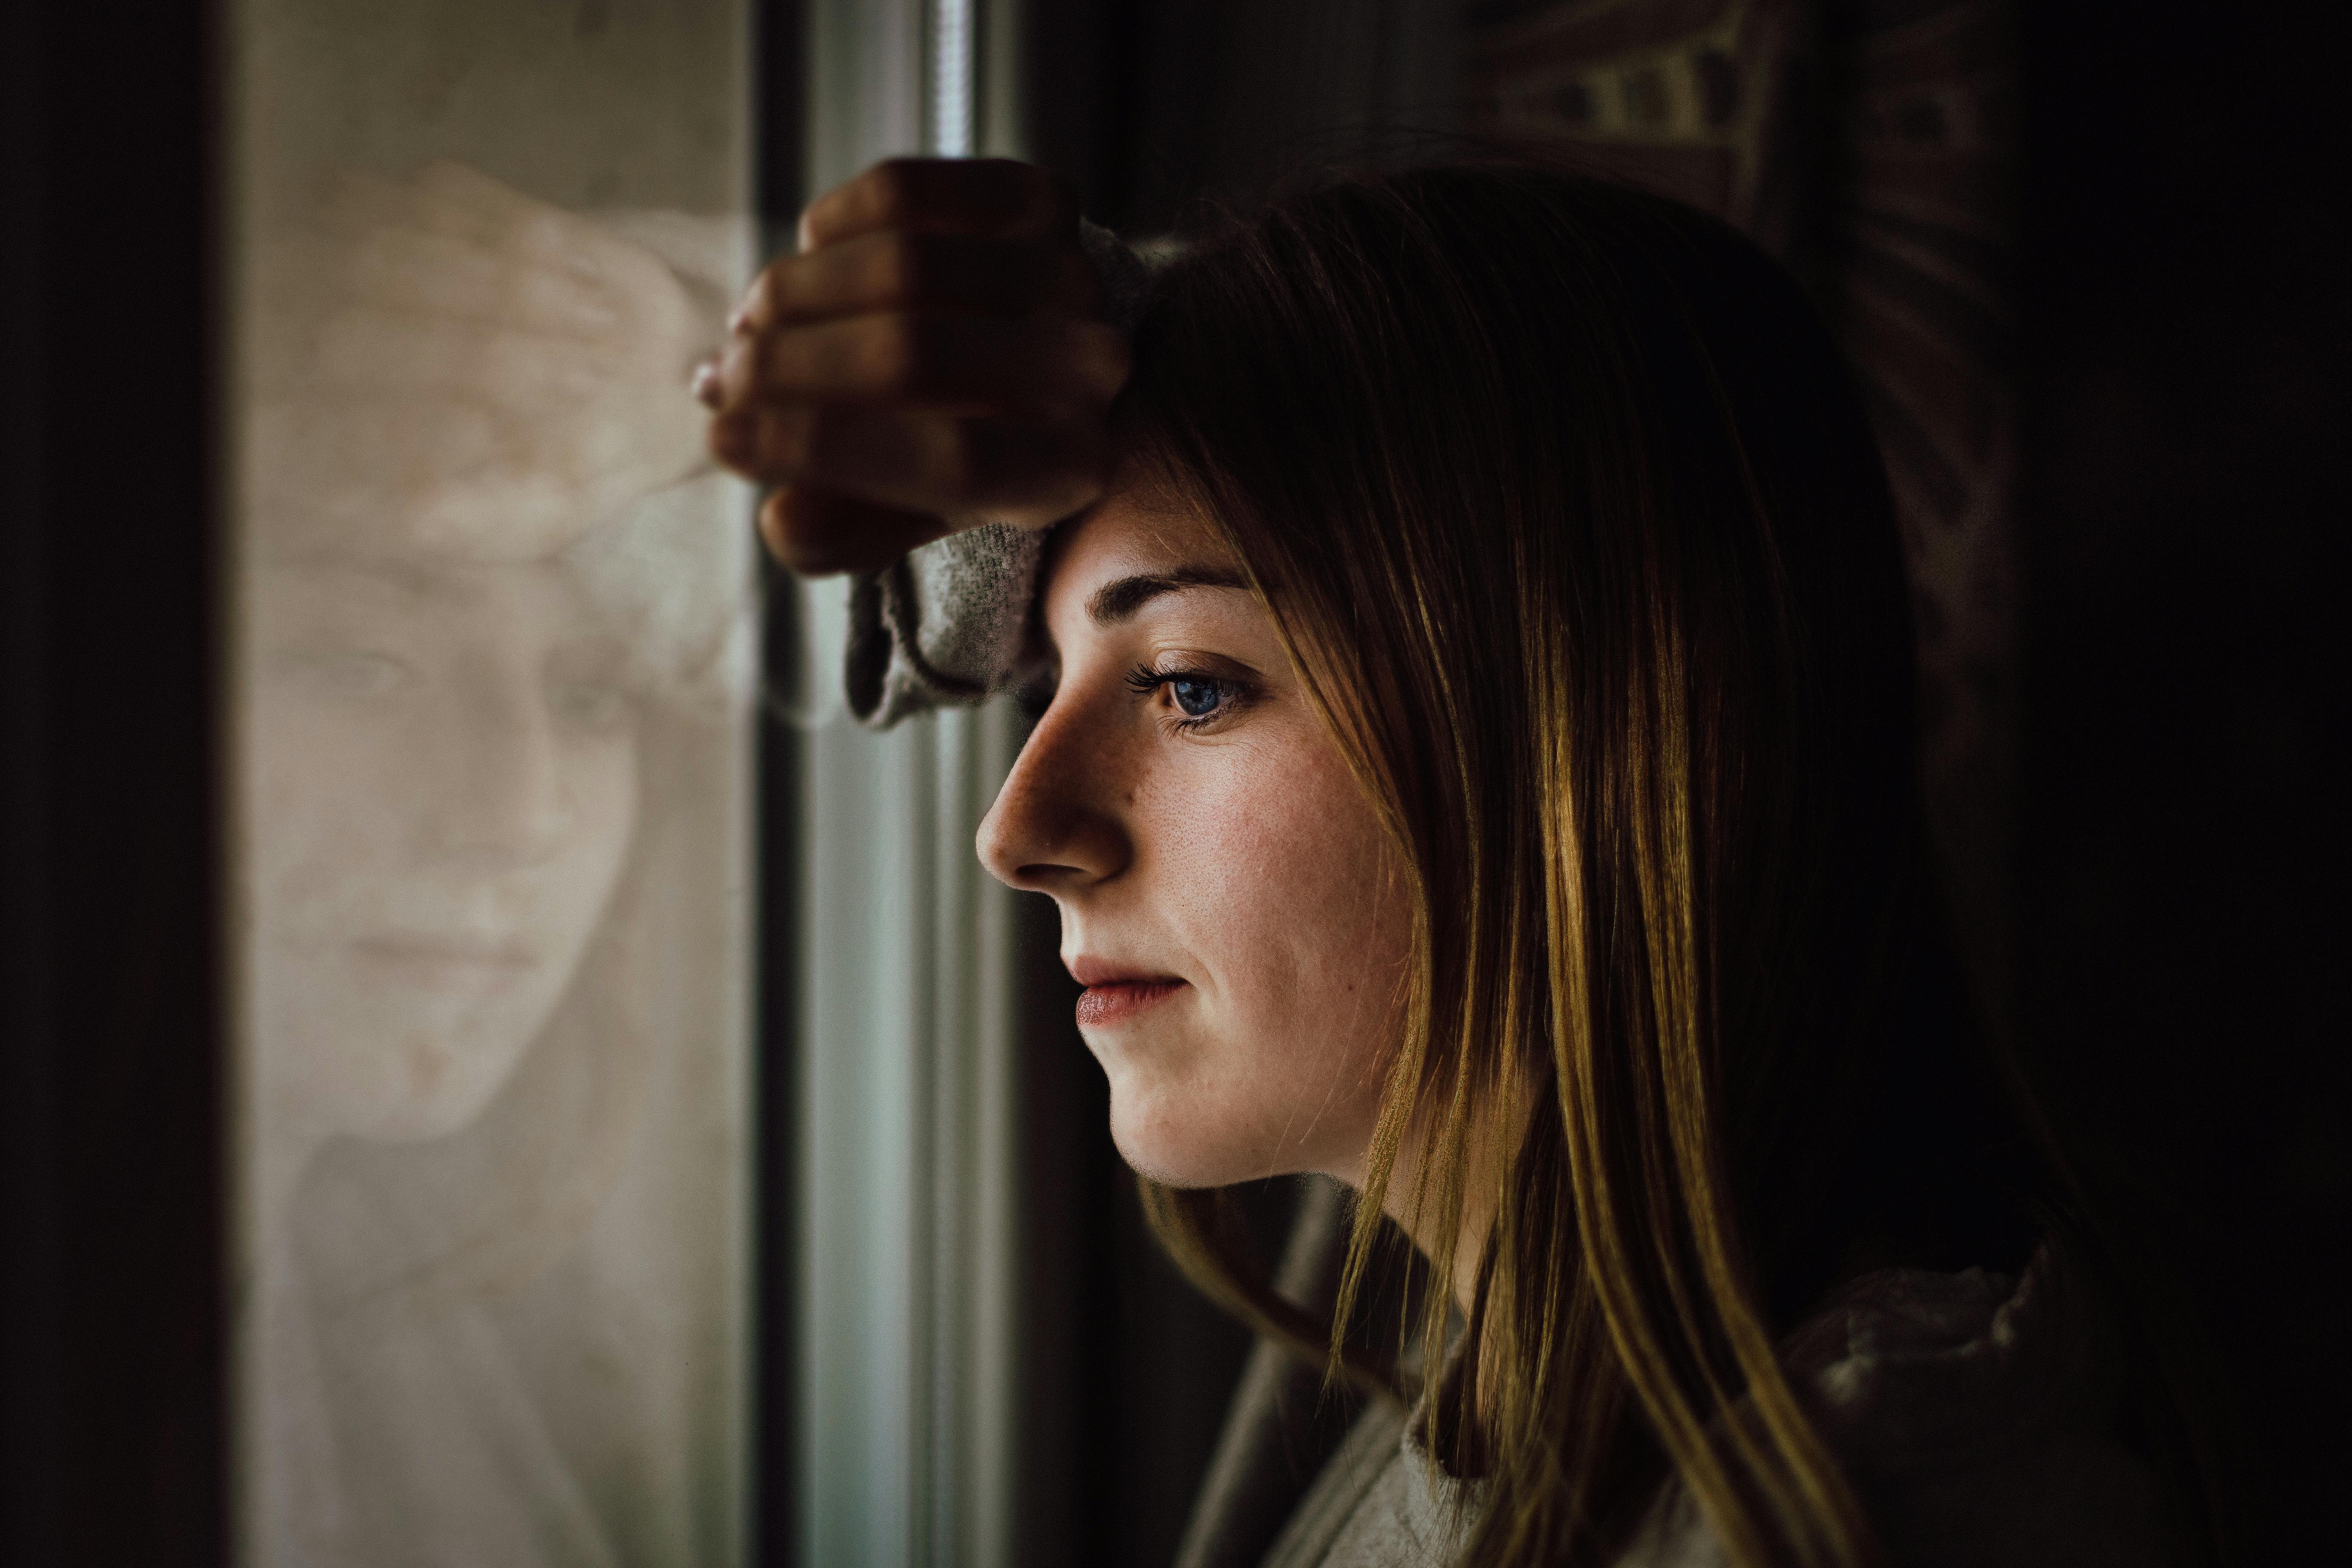 Une femme regardant par la fenêtre et perdue dans ses pensées | Source : Pexels